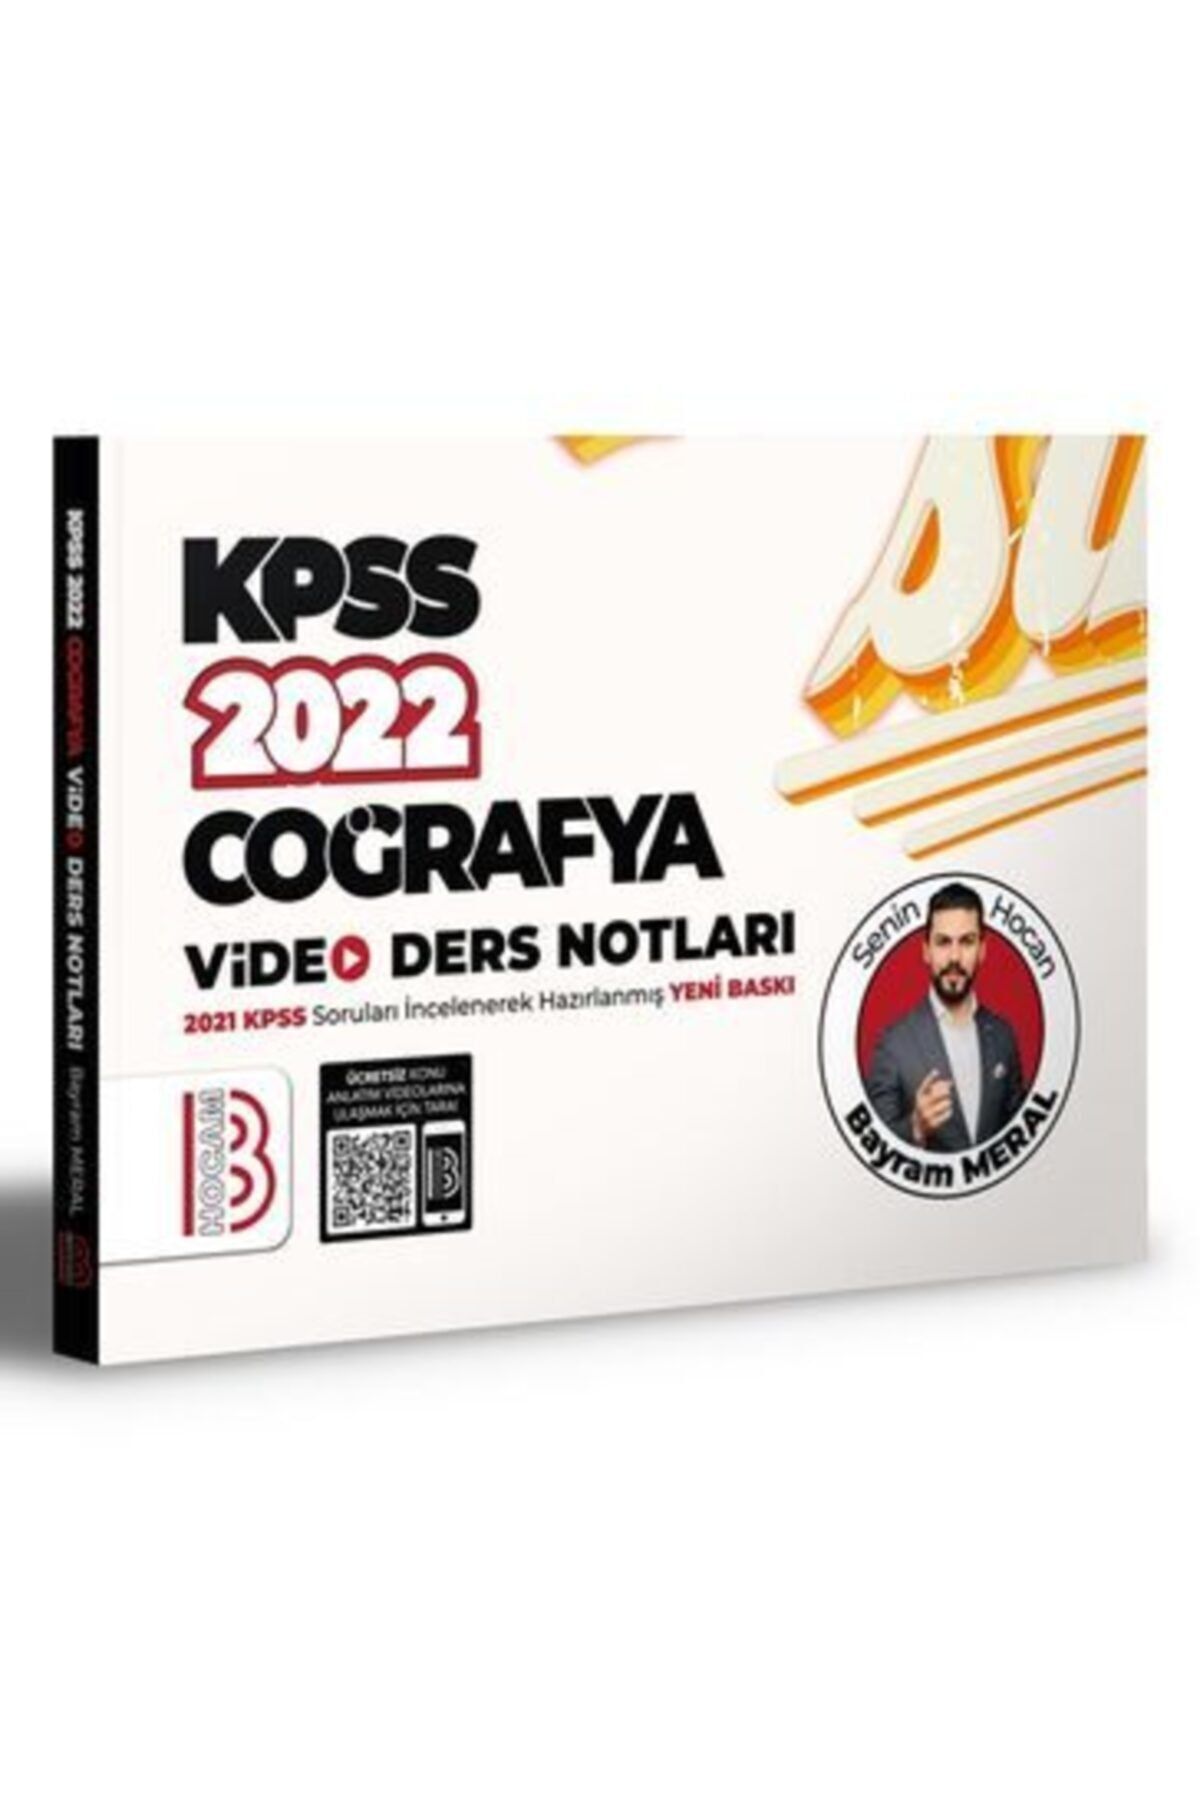 Benim Hocam Yayınları Benim Hocam 2022 Kpss Coğrafya Video Ders Notları - Bayram Meral